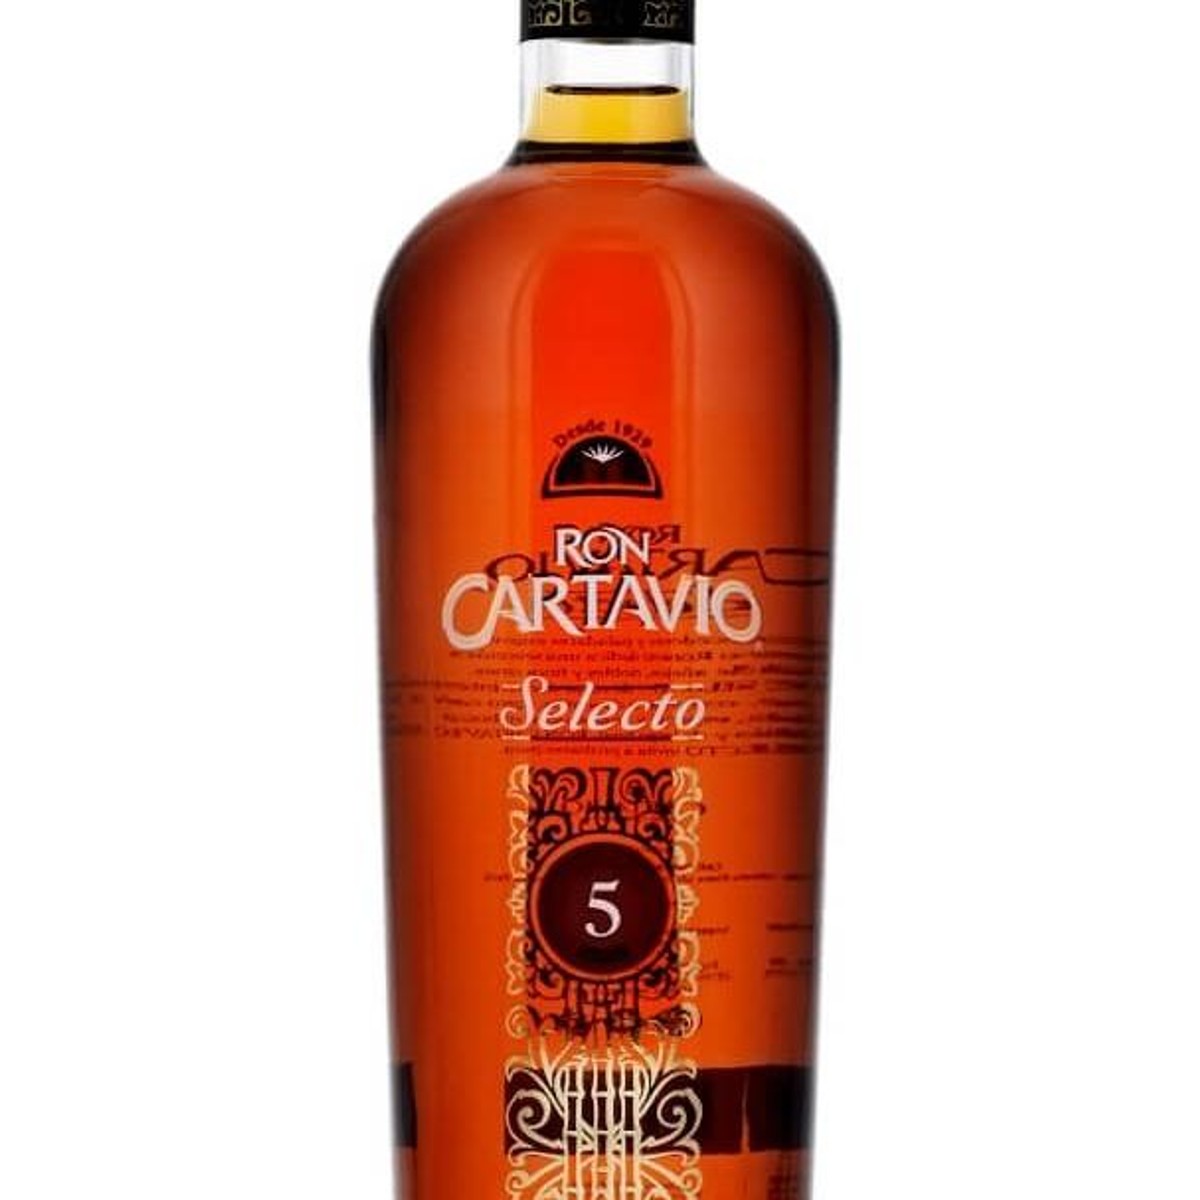 Ron Zacapa Centenario 23 Year Rum (750ml) – Siesta Spirits